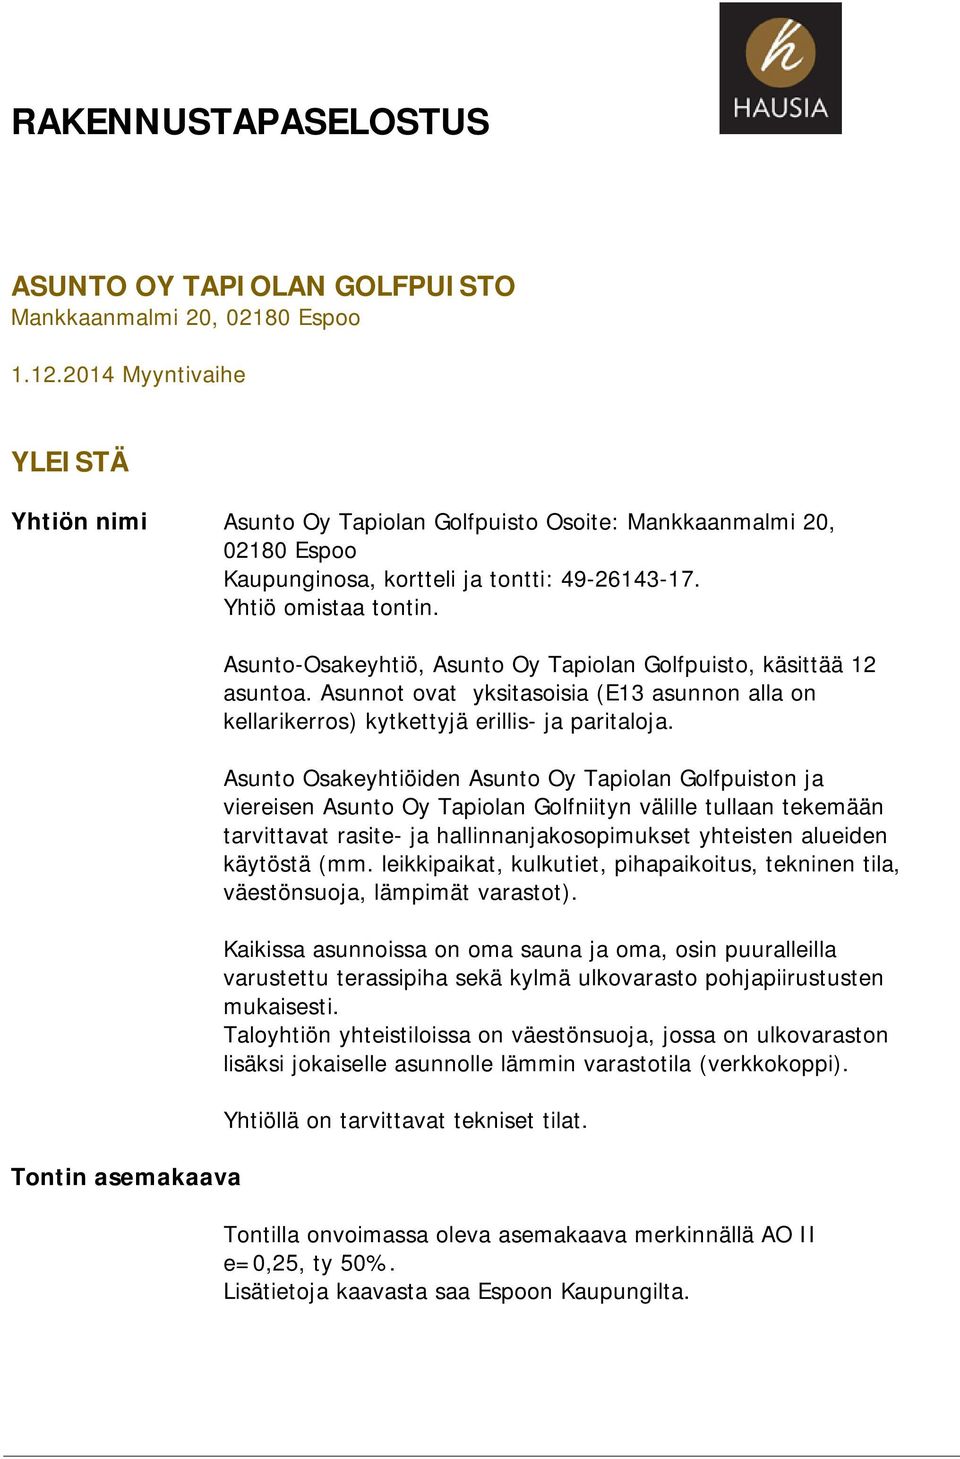 Tontin asemakaava Asunto-Osakeyhtiö, Asunto Oy Tapiolan Golfpuisto, käsittää 12 asuntoa. Asunnot ovat yksitasoisia (E13 asunnon alla on kellarikerros) kytkettyjä erillis- ja paritaloja.